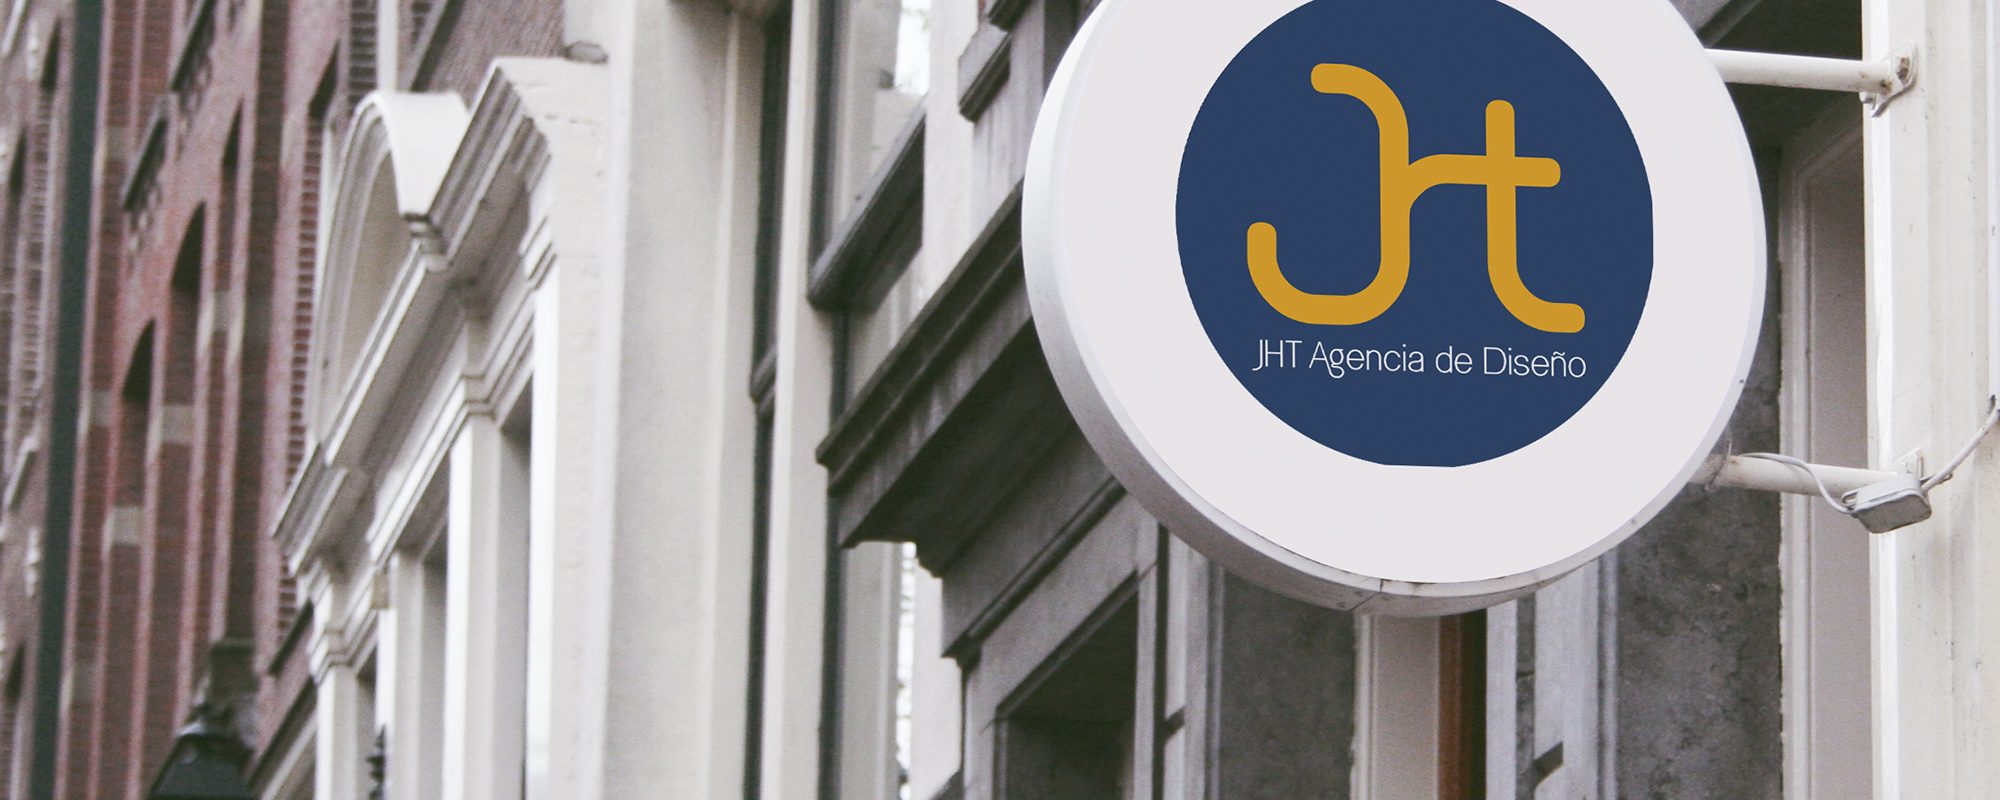 JHT Agencia de Diseño